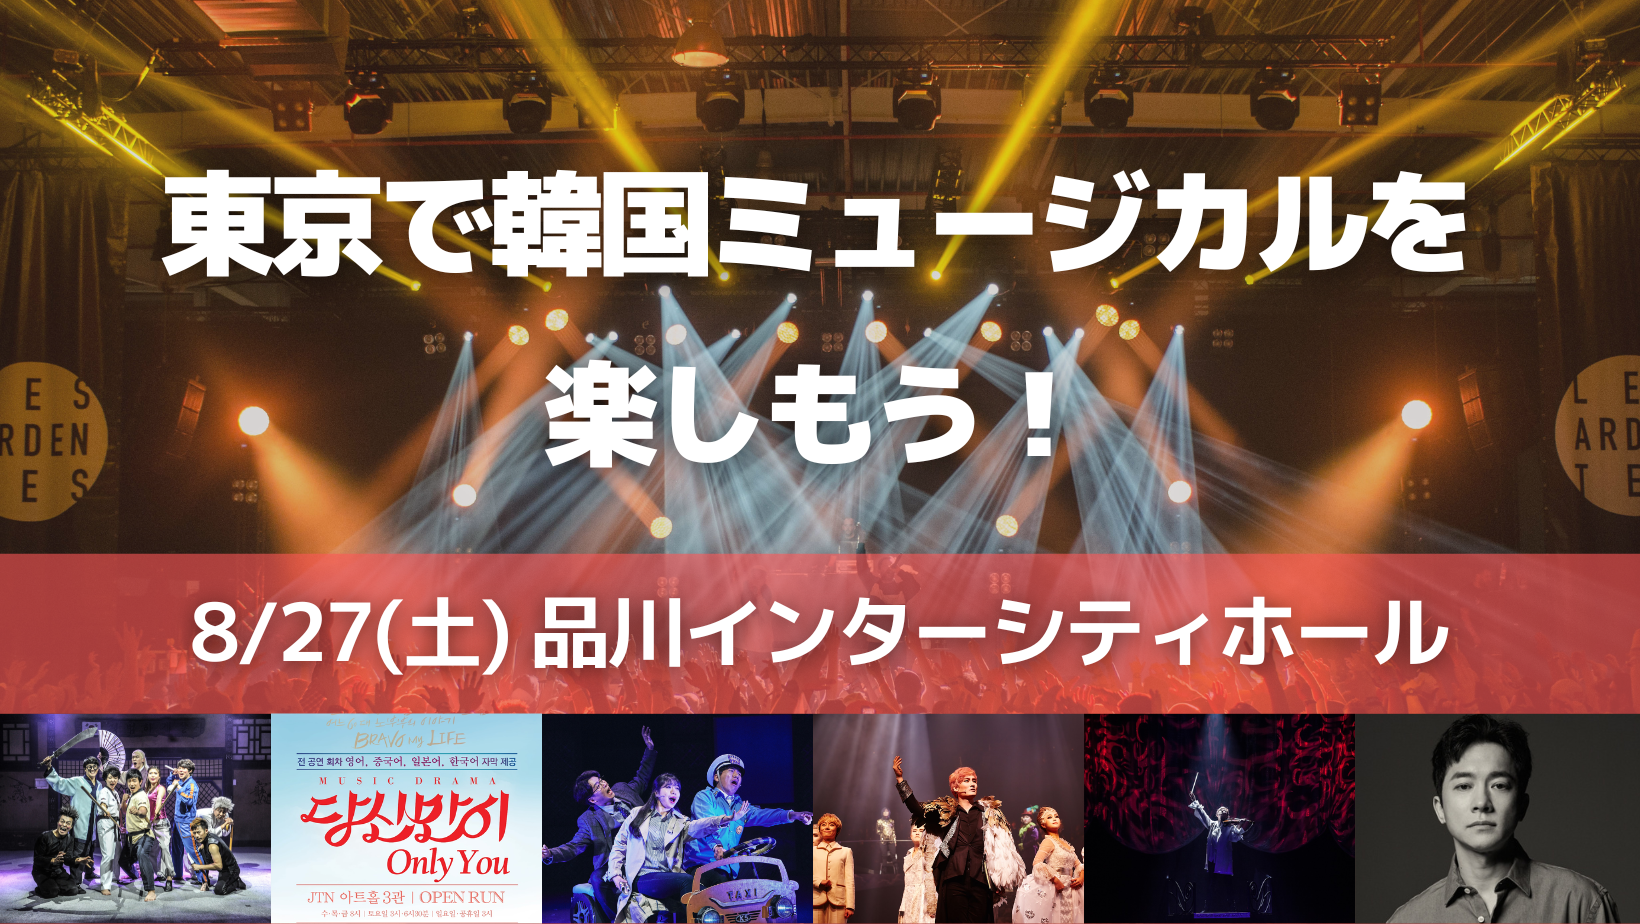 新着情報 韓国観光公社公式サイト 東京 東京で韓国ミュージカルを楽しもう 開催 韓国観光公社公式サイト